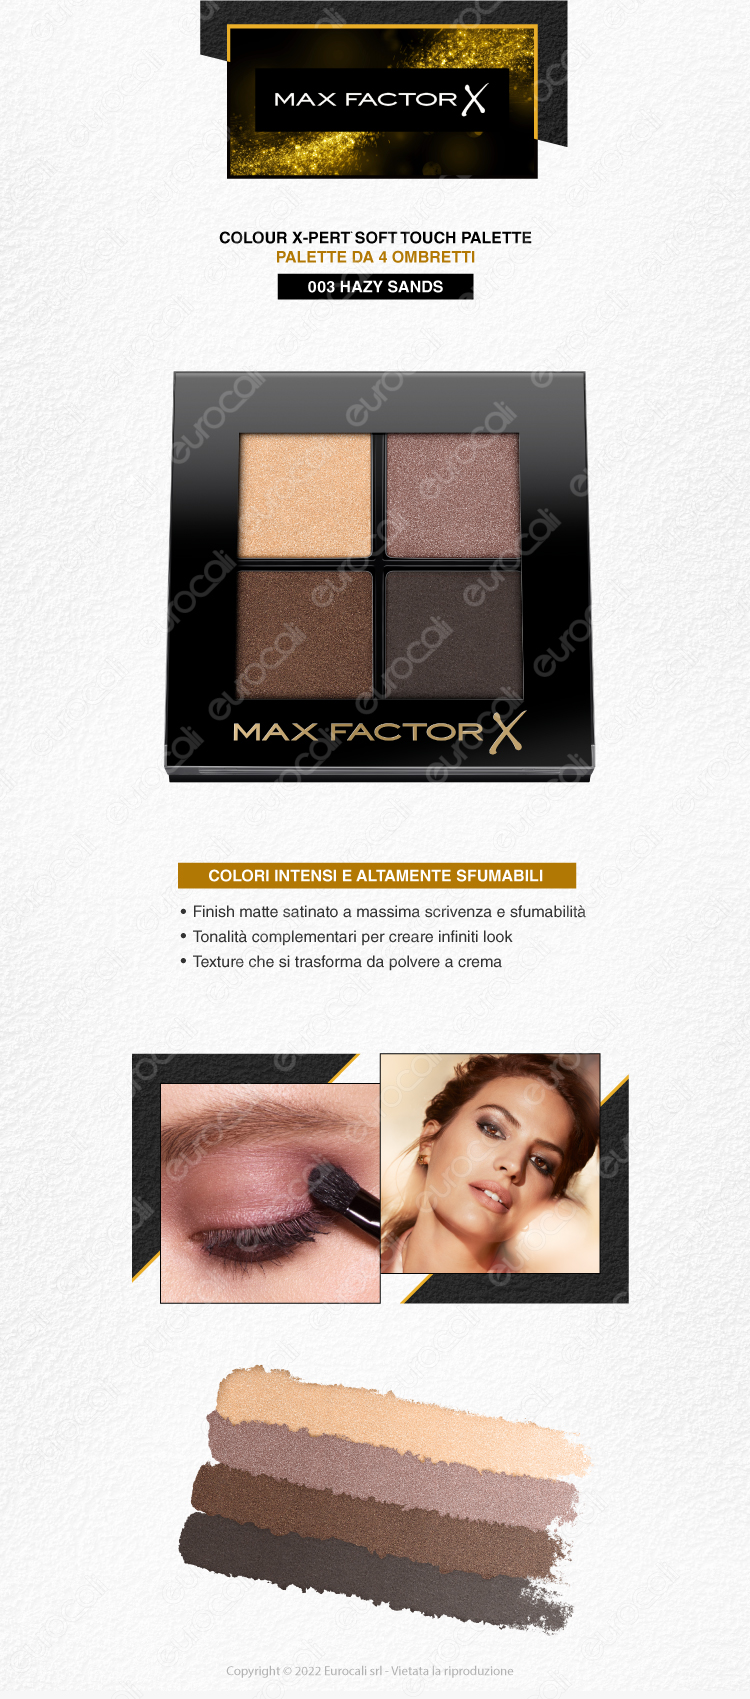 max factor palette ombretti 4 colori x-pert